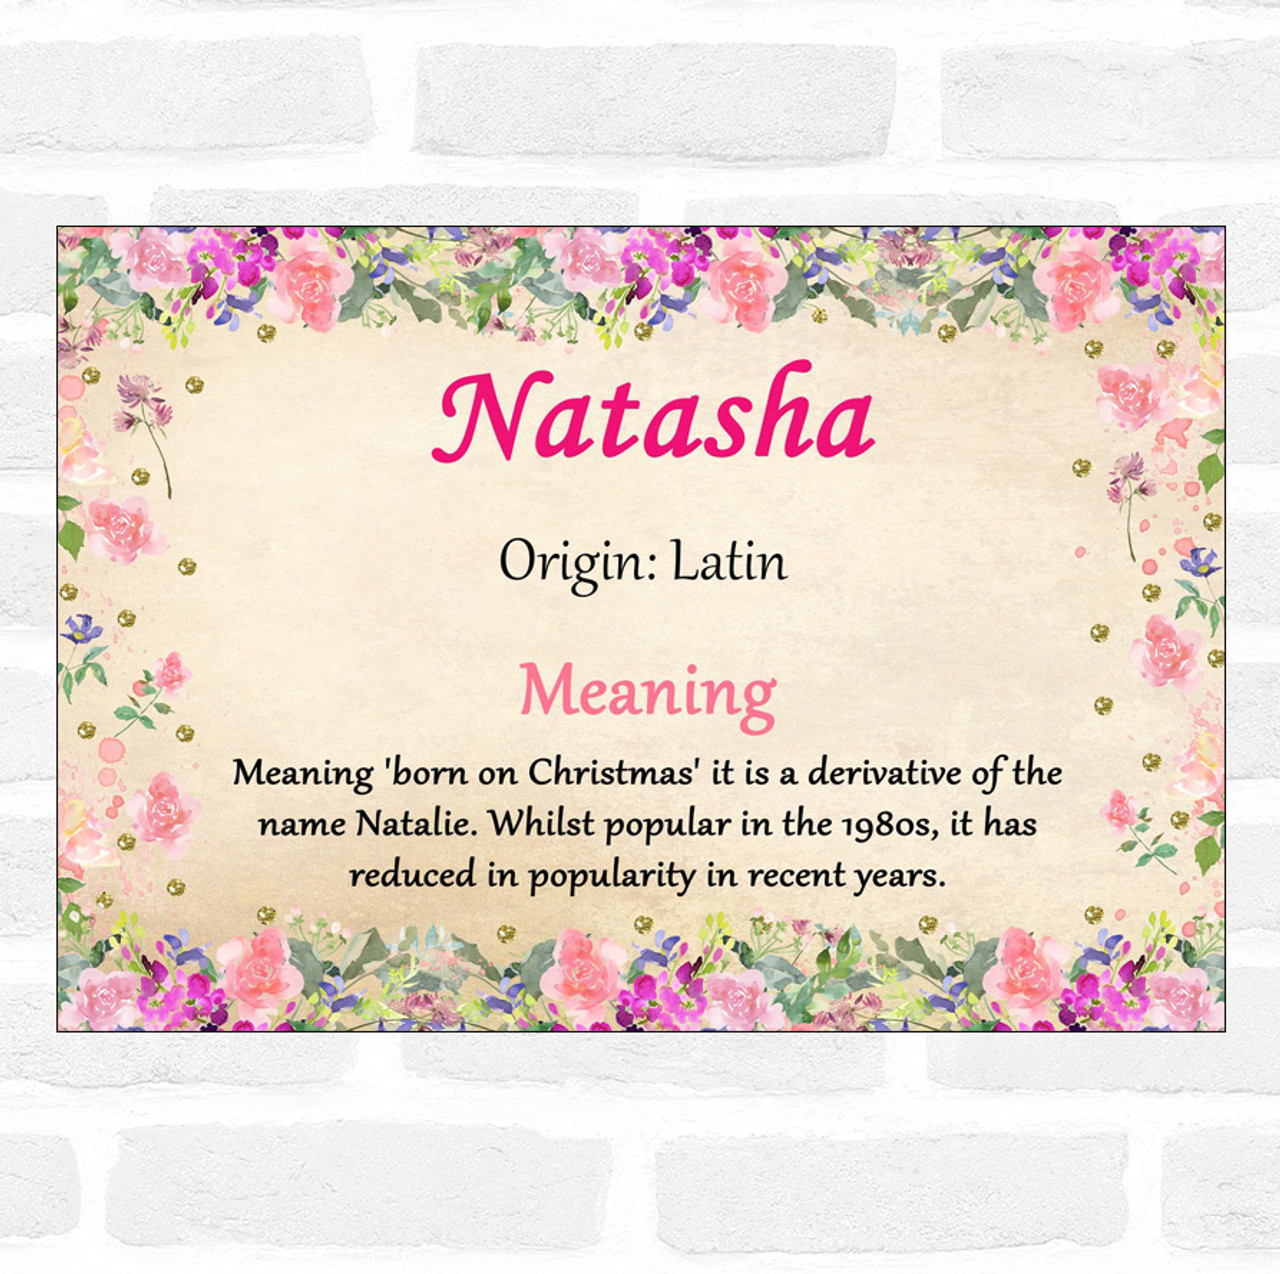 Tên Natasha đầy tự tin với cái tên độc đáo và ý nghĩa, và chắc chắn sẽ khiến bạn cảm thấy thích thú khi tìm hiểu về người mang tên này. Hãy cùng khám phá câu chuyện đằng sau tên Natasha mà bạn chưa bao giờ biết!